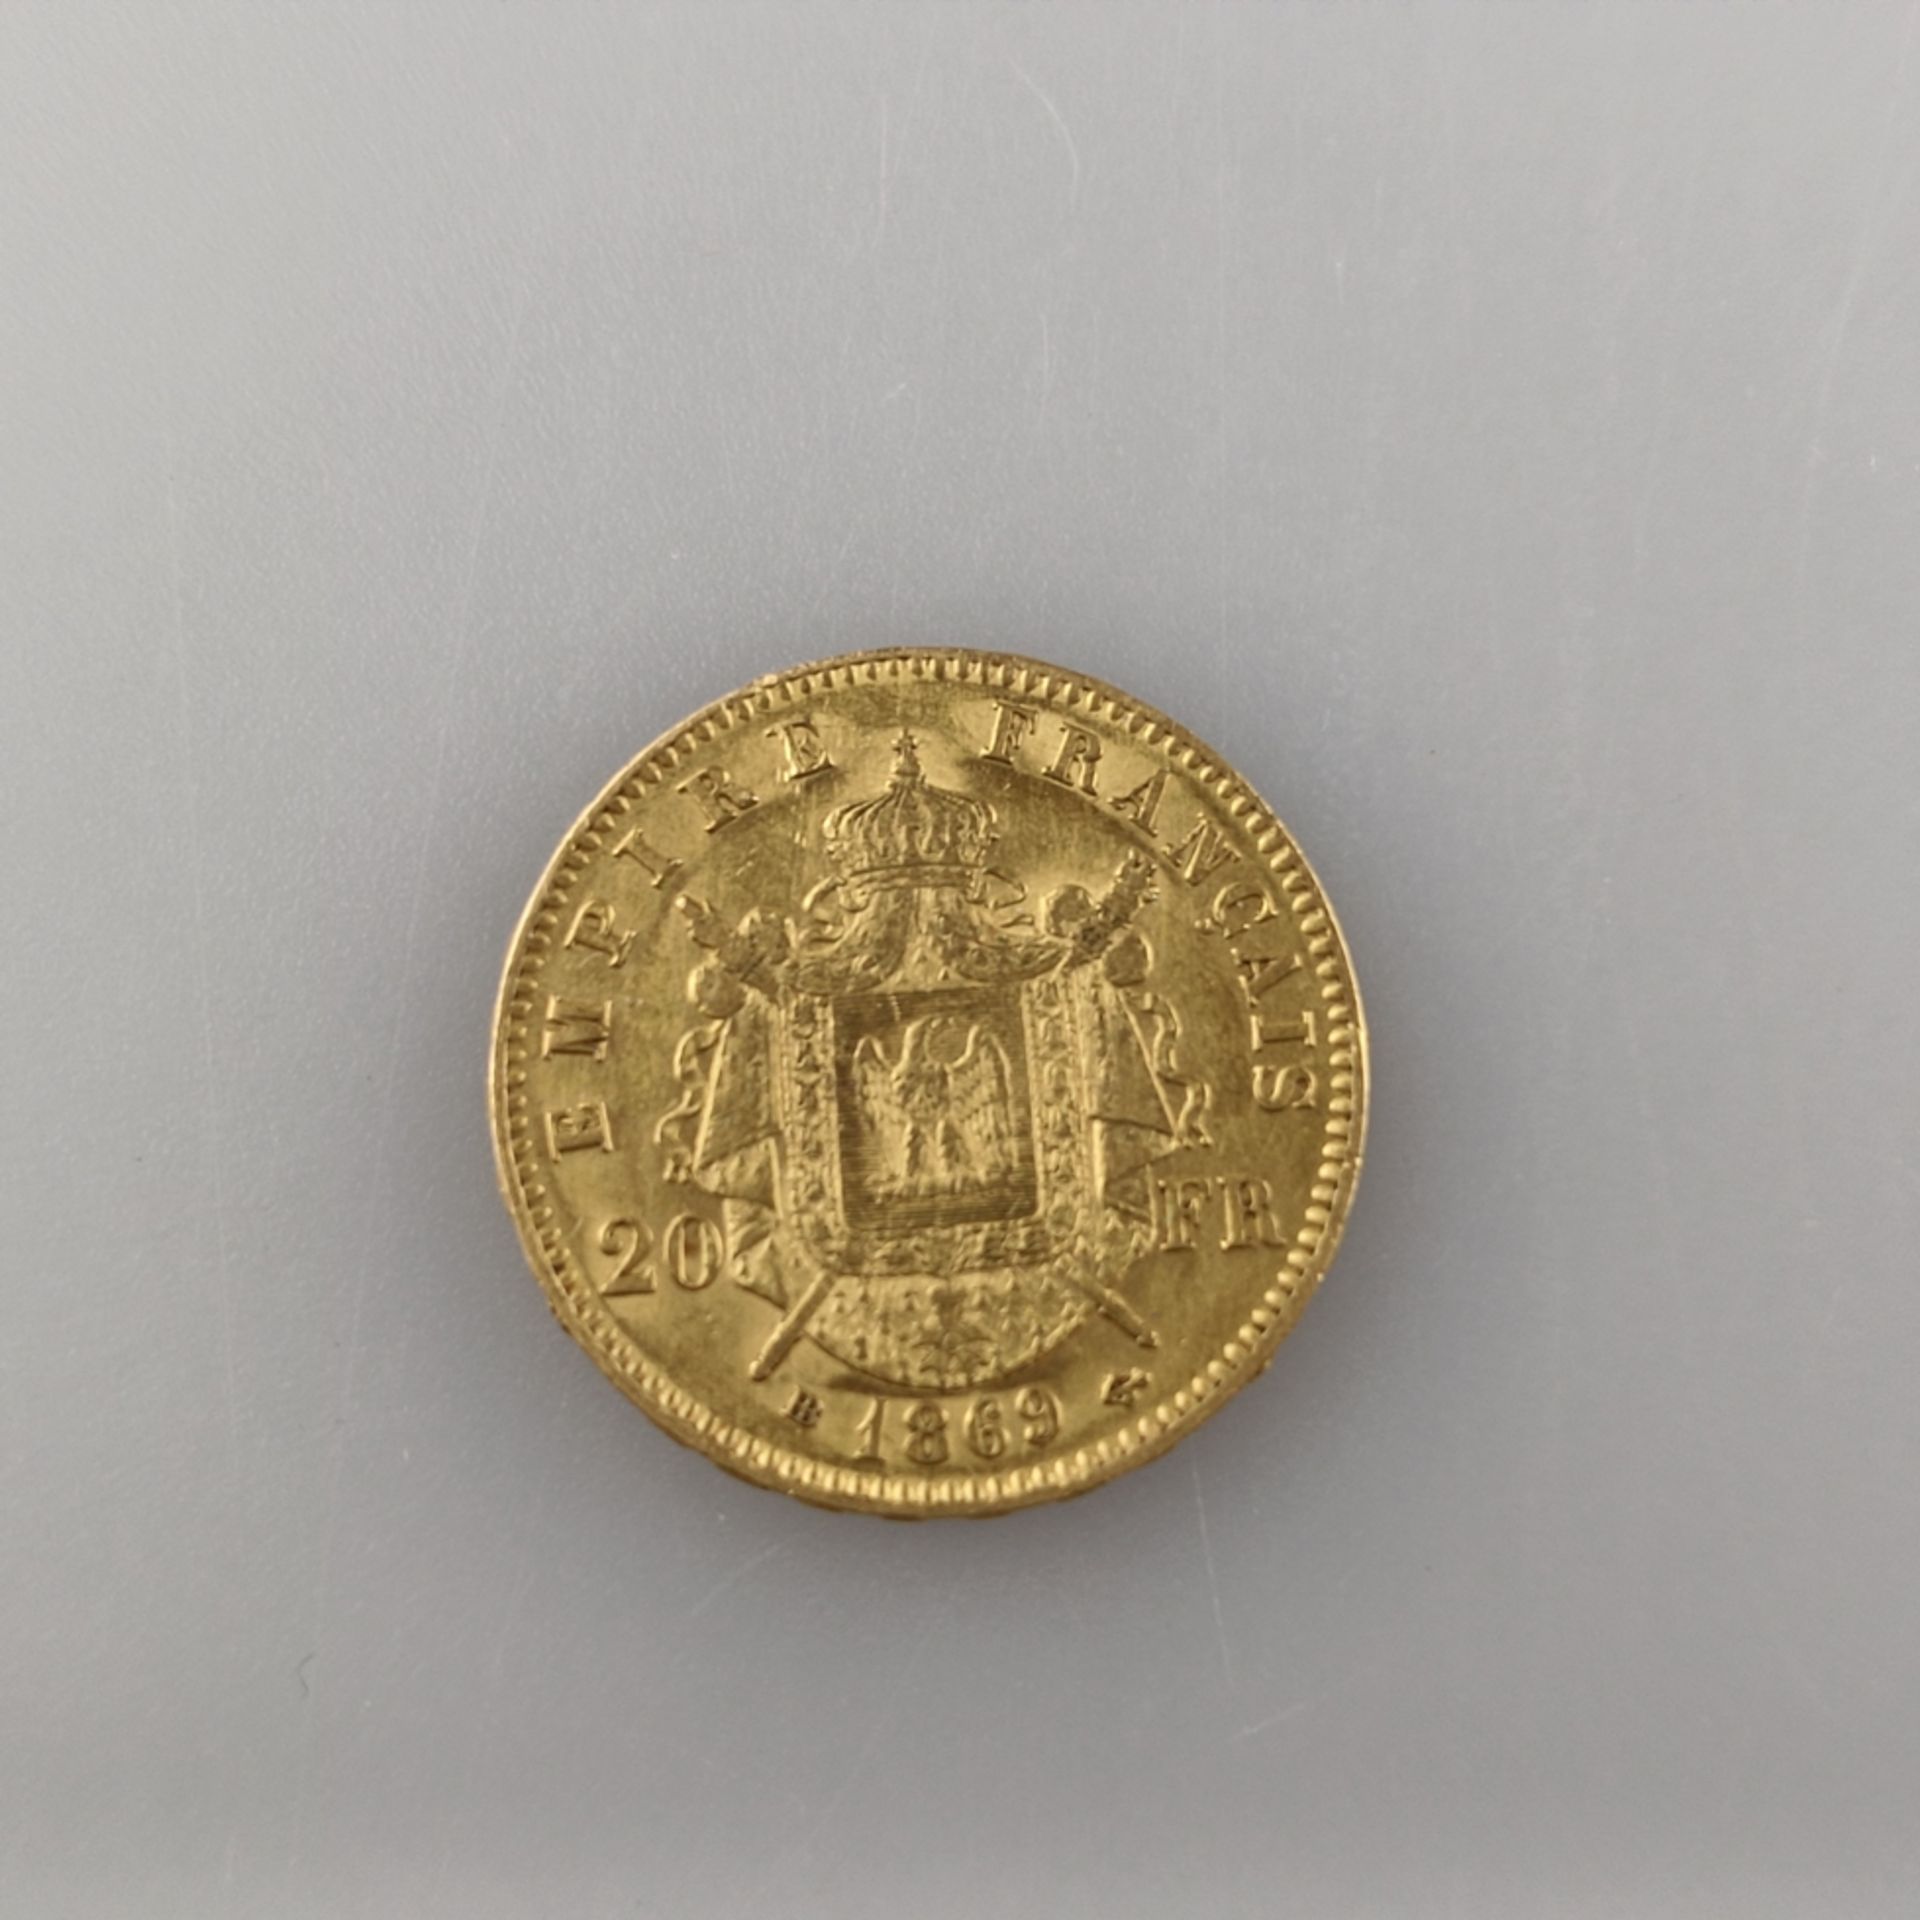 Goldmünze 20 Francs 1867 - Frankreich, Napoleon III Empereur, 900/000 Gold, Entwurf: Barre, Prägema - Image 2 of 3